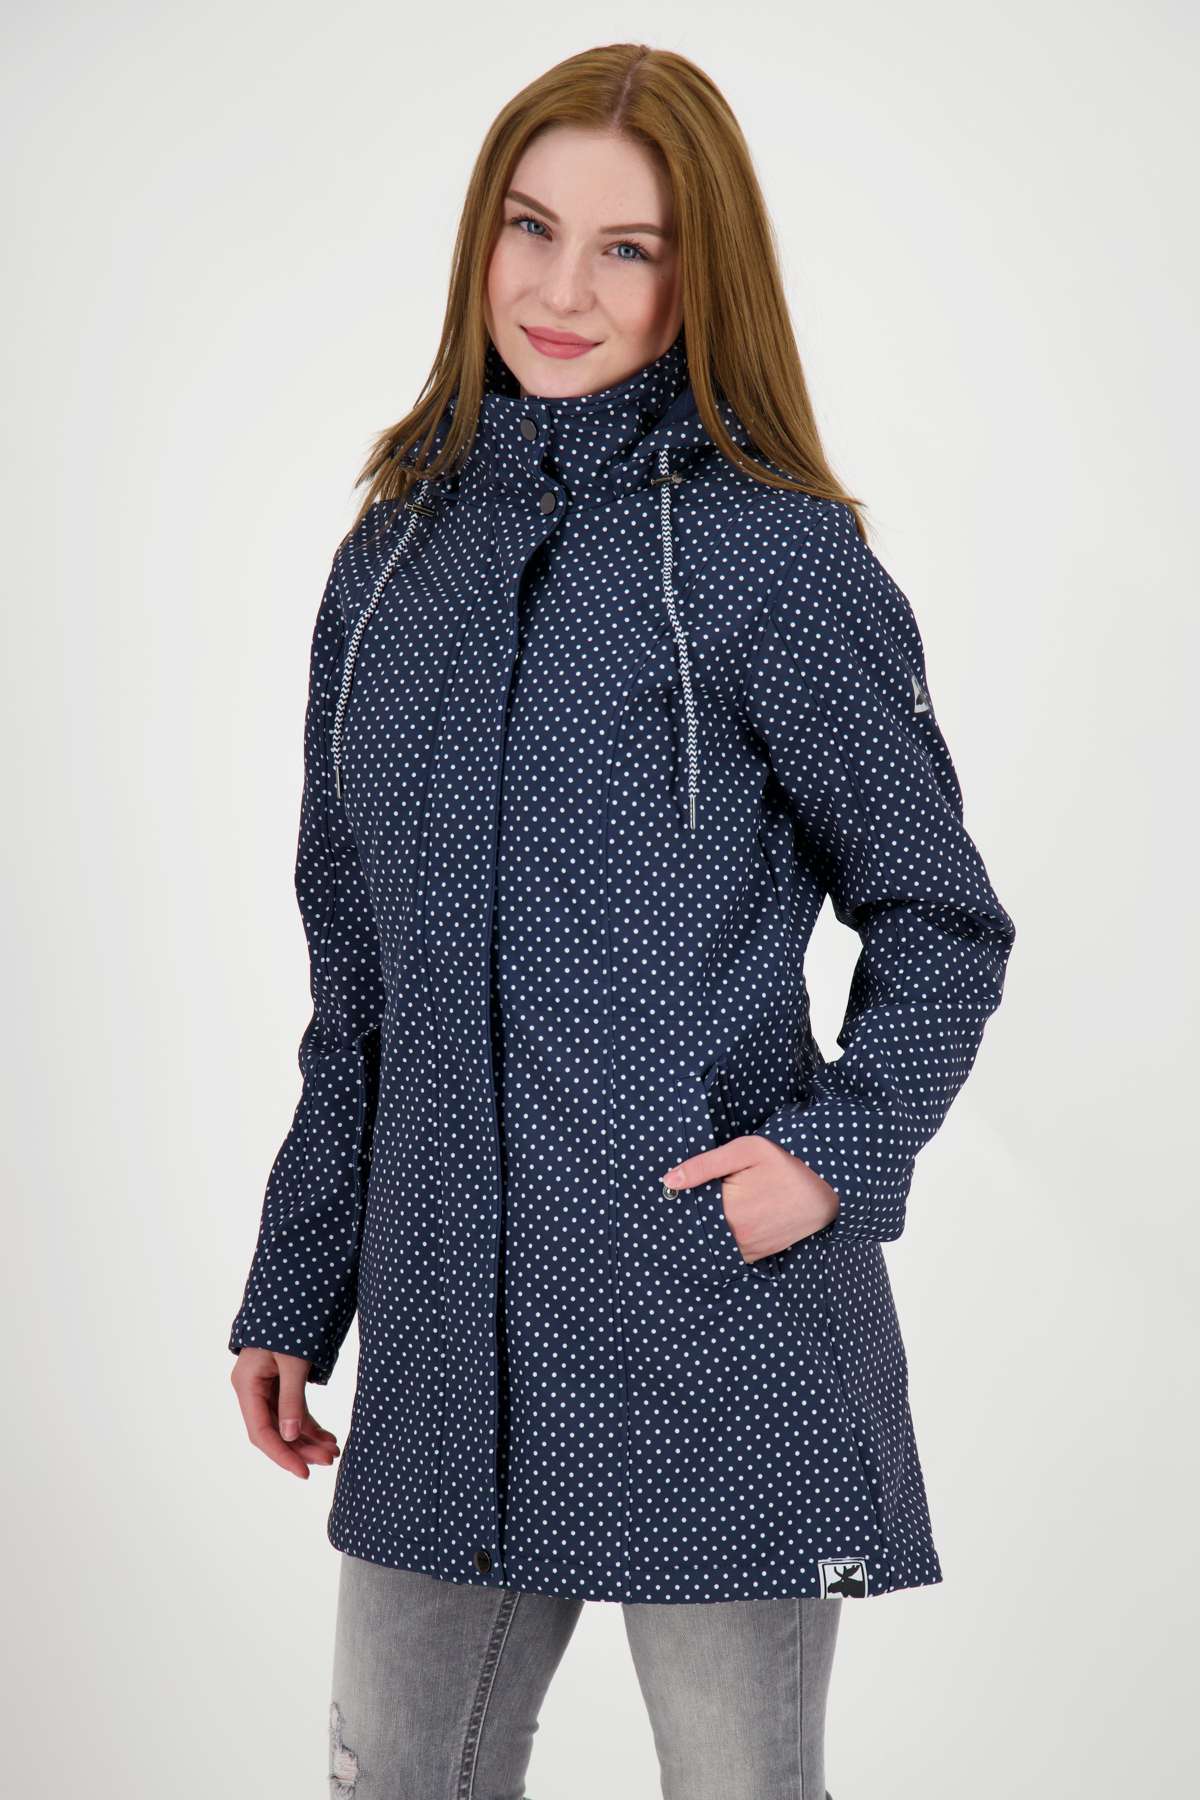 Пальто из софтшелла TWIN PEAK DOTS WOMEN также доступно в больших размерах.